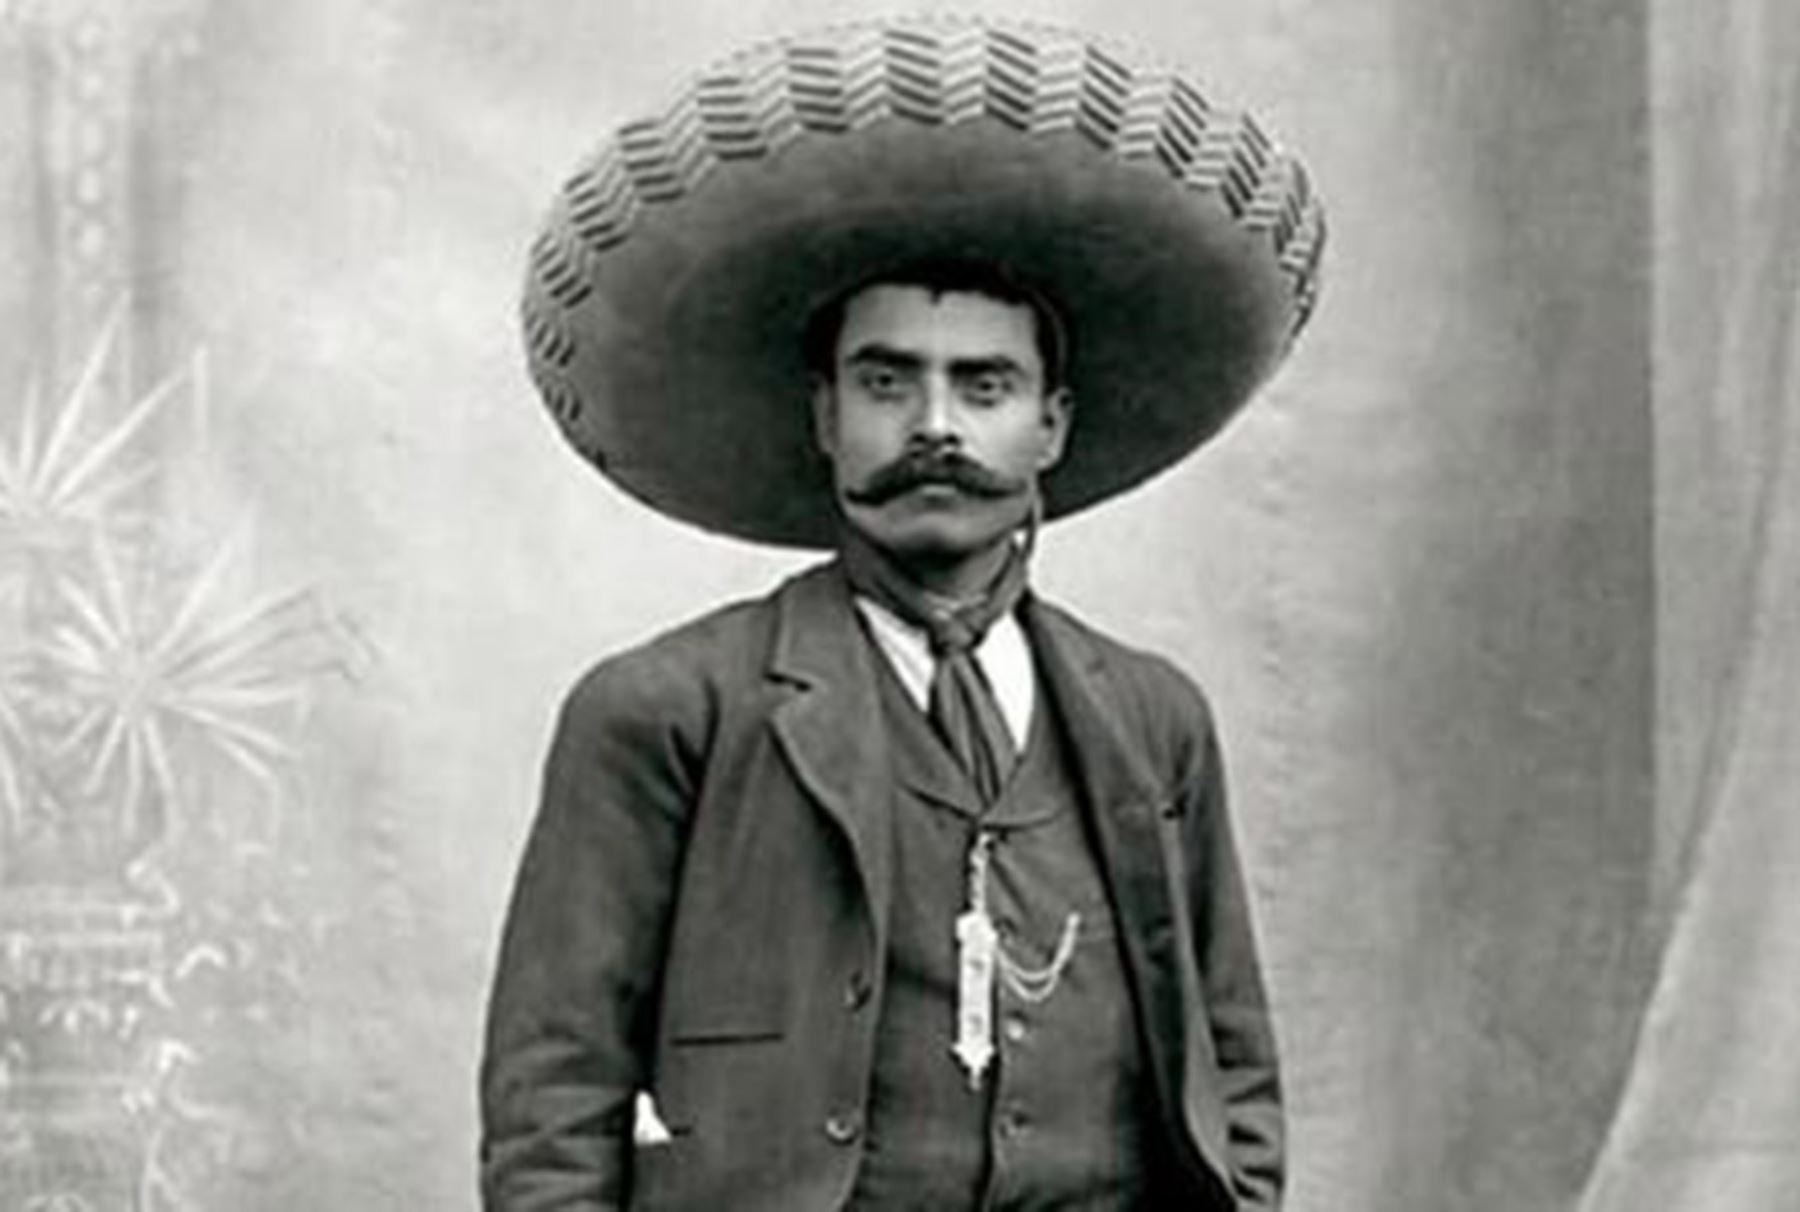 Discurso: "A los pueblos olvidados", de Emiliano Zapata - Beers&Politics